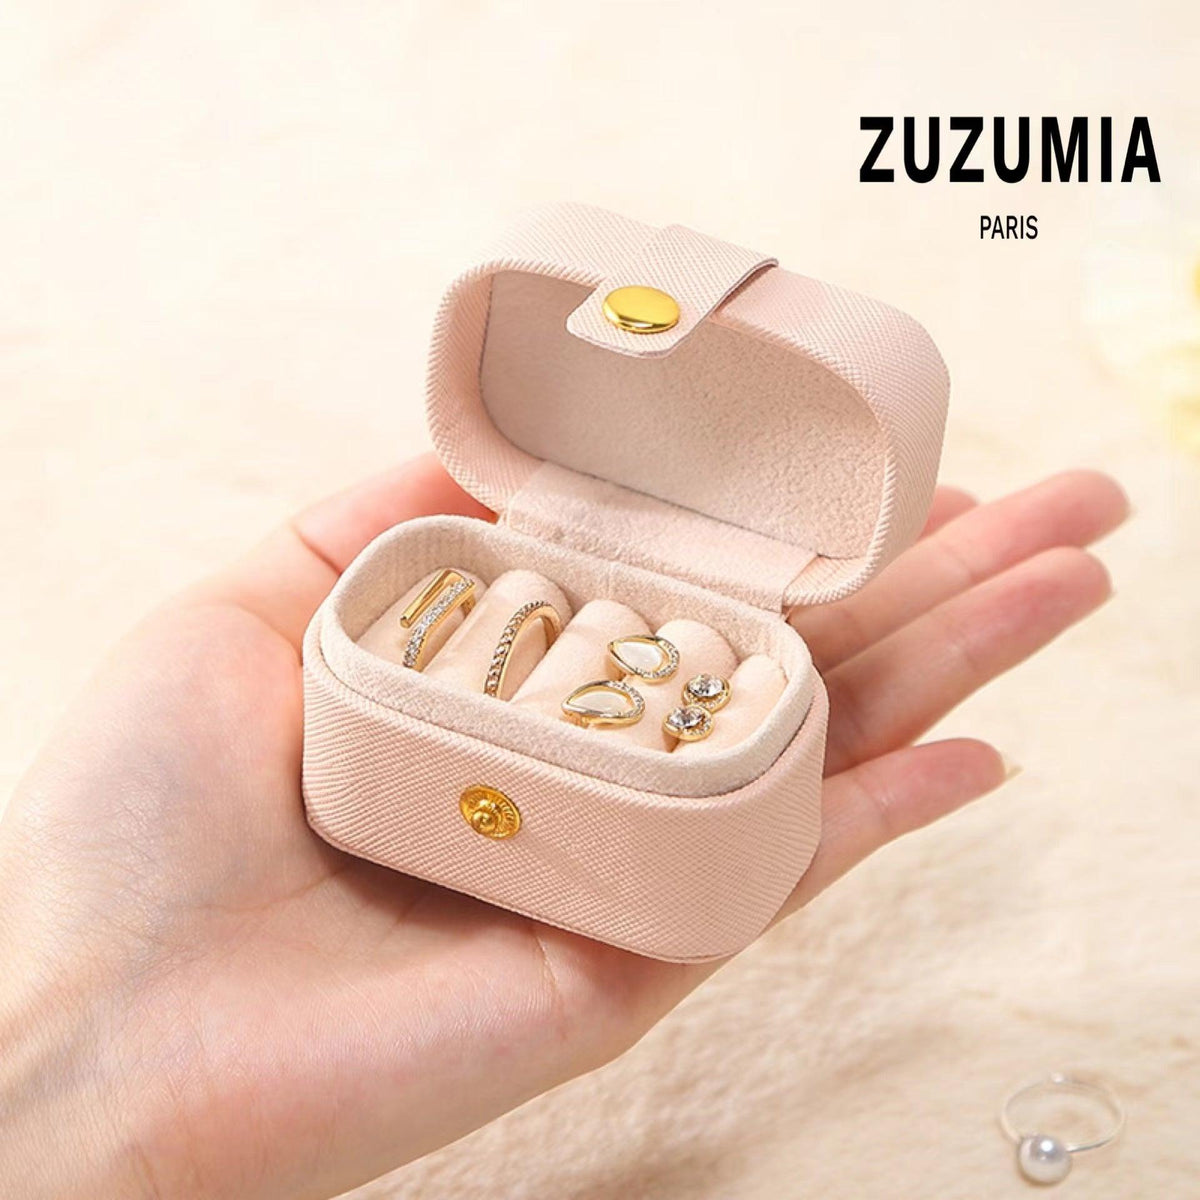 Leather Velvet Travel Jewelry Box - zuzumia